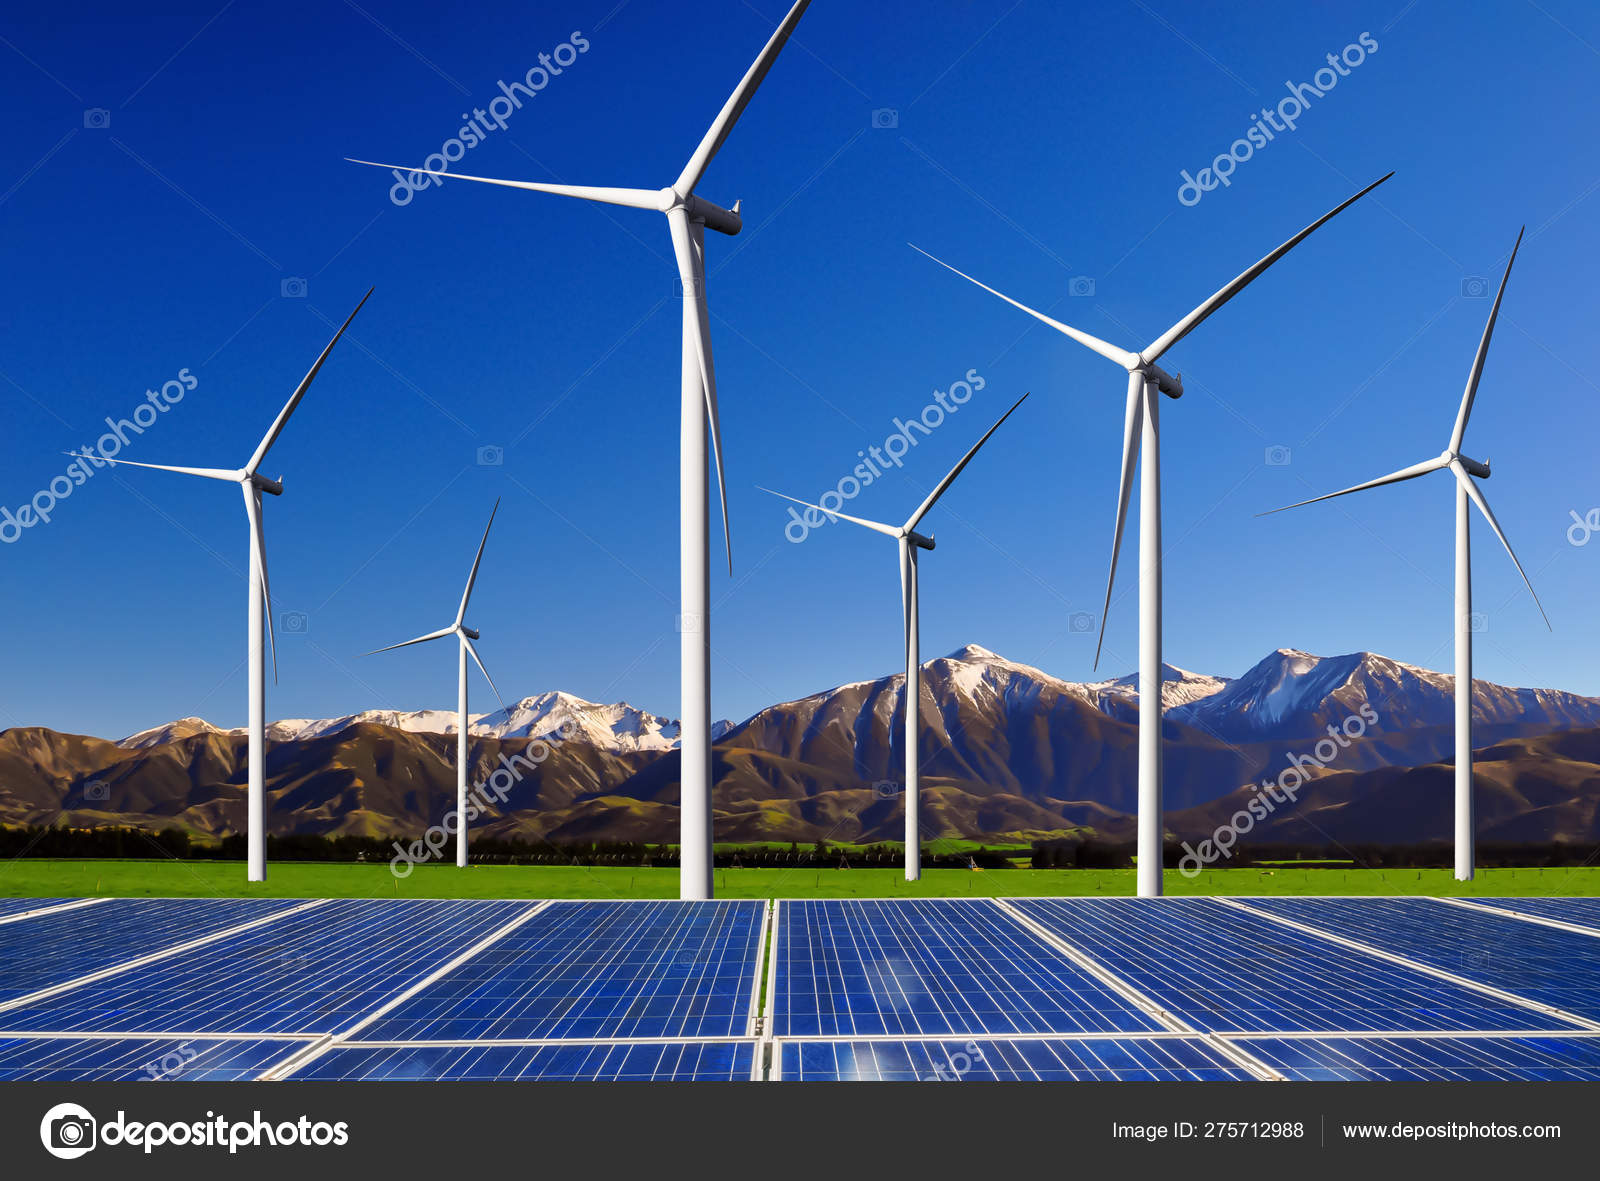 Panel solar y parque eólico energía limpia.: fotografía de stock ©  BiancoBlue #275712988 | Depositphotos